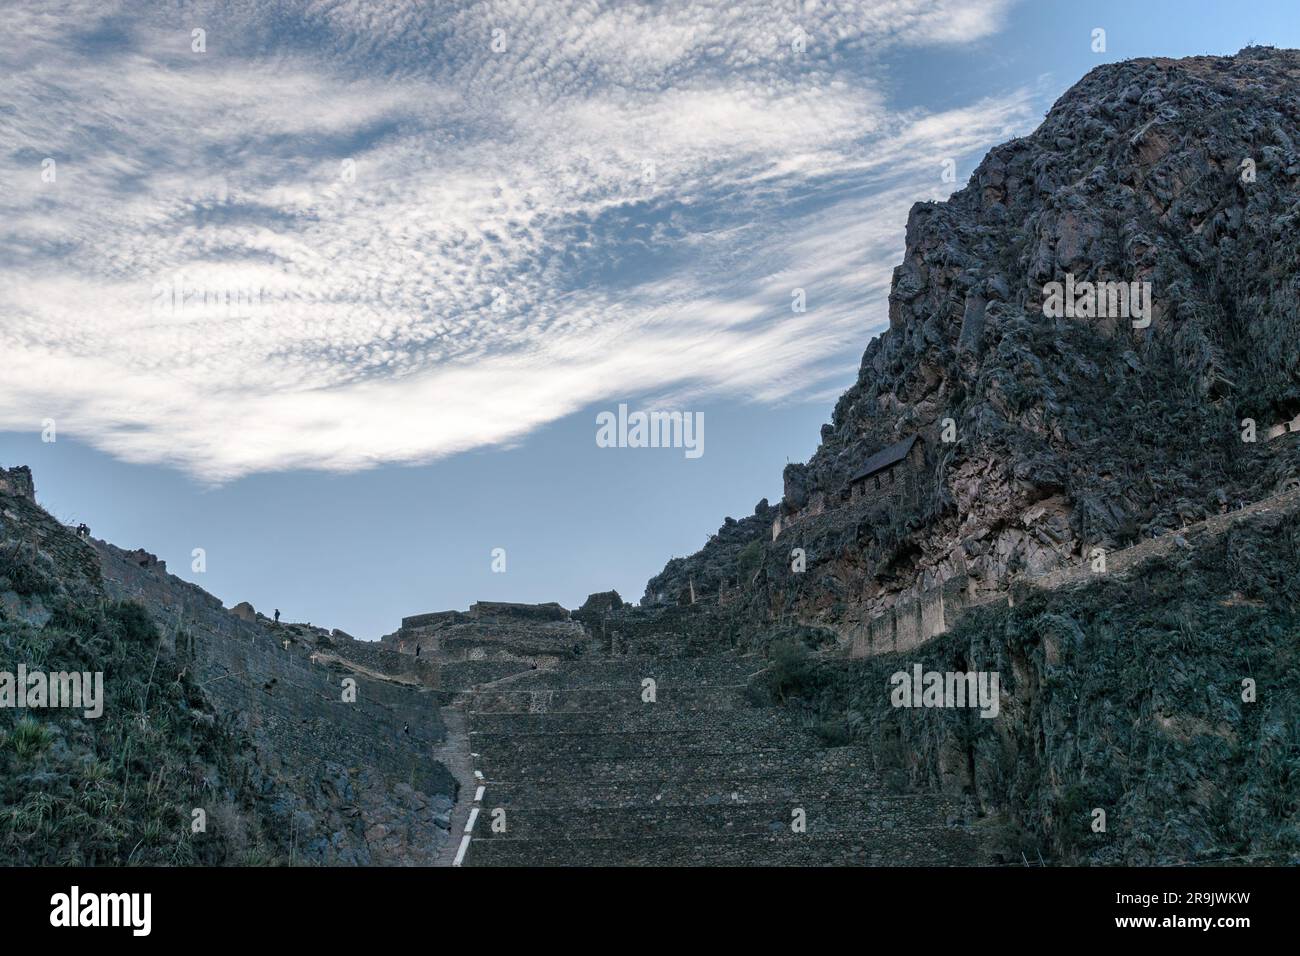 Ollantaytambo, scalini in pietra e terrazze su una ripida parete rocciosa tra le montagne, piccole case e persone sul sentiero. Foto Stock